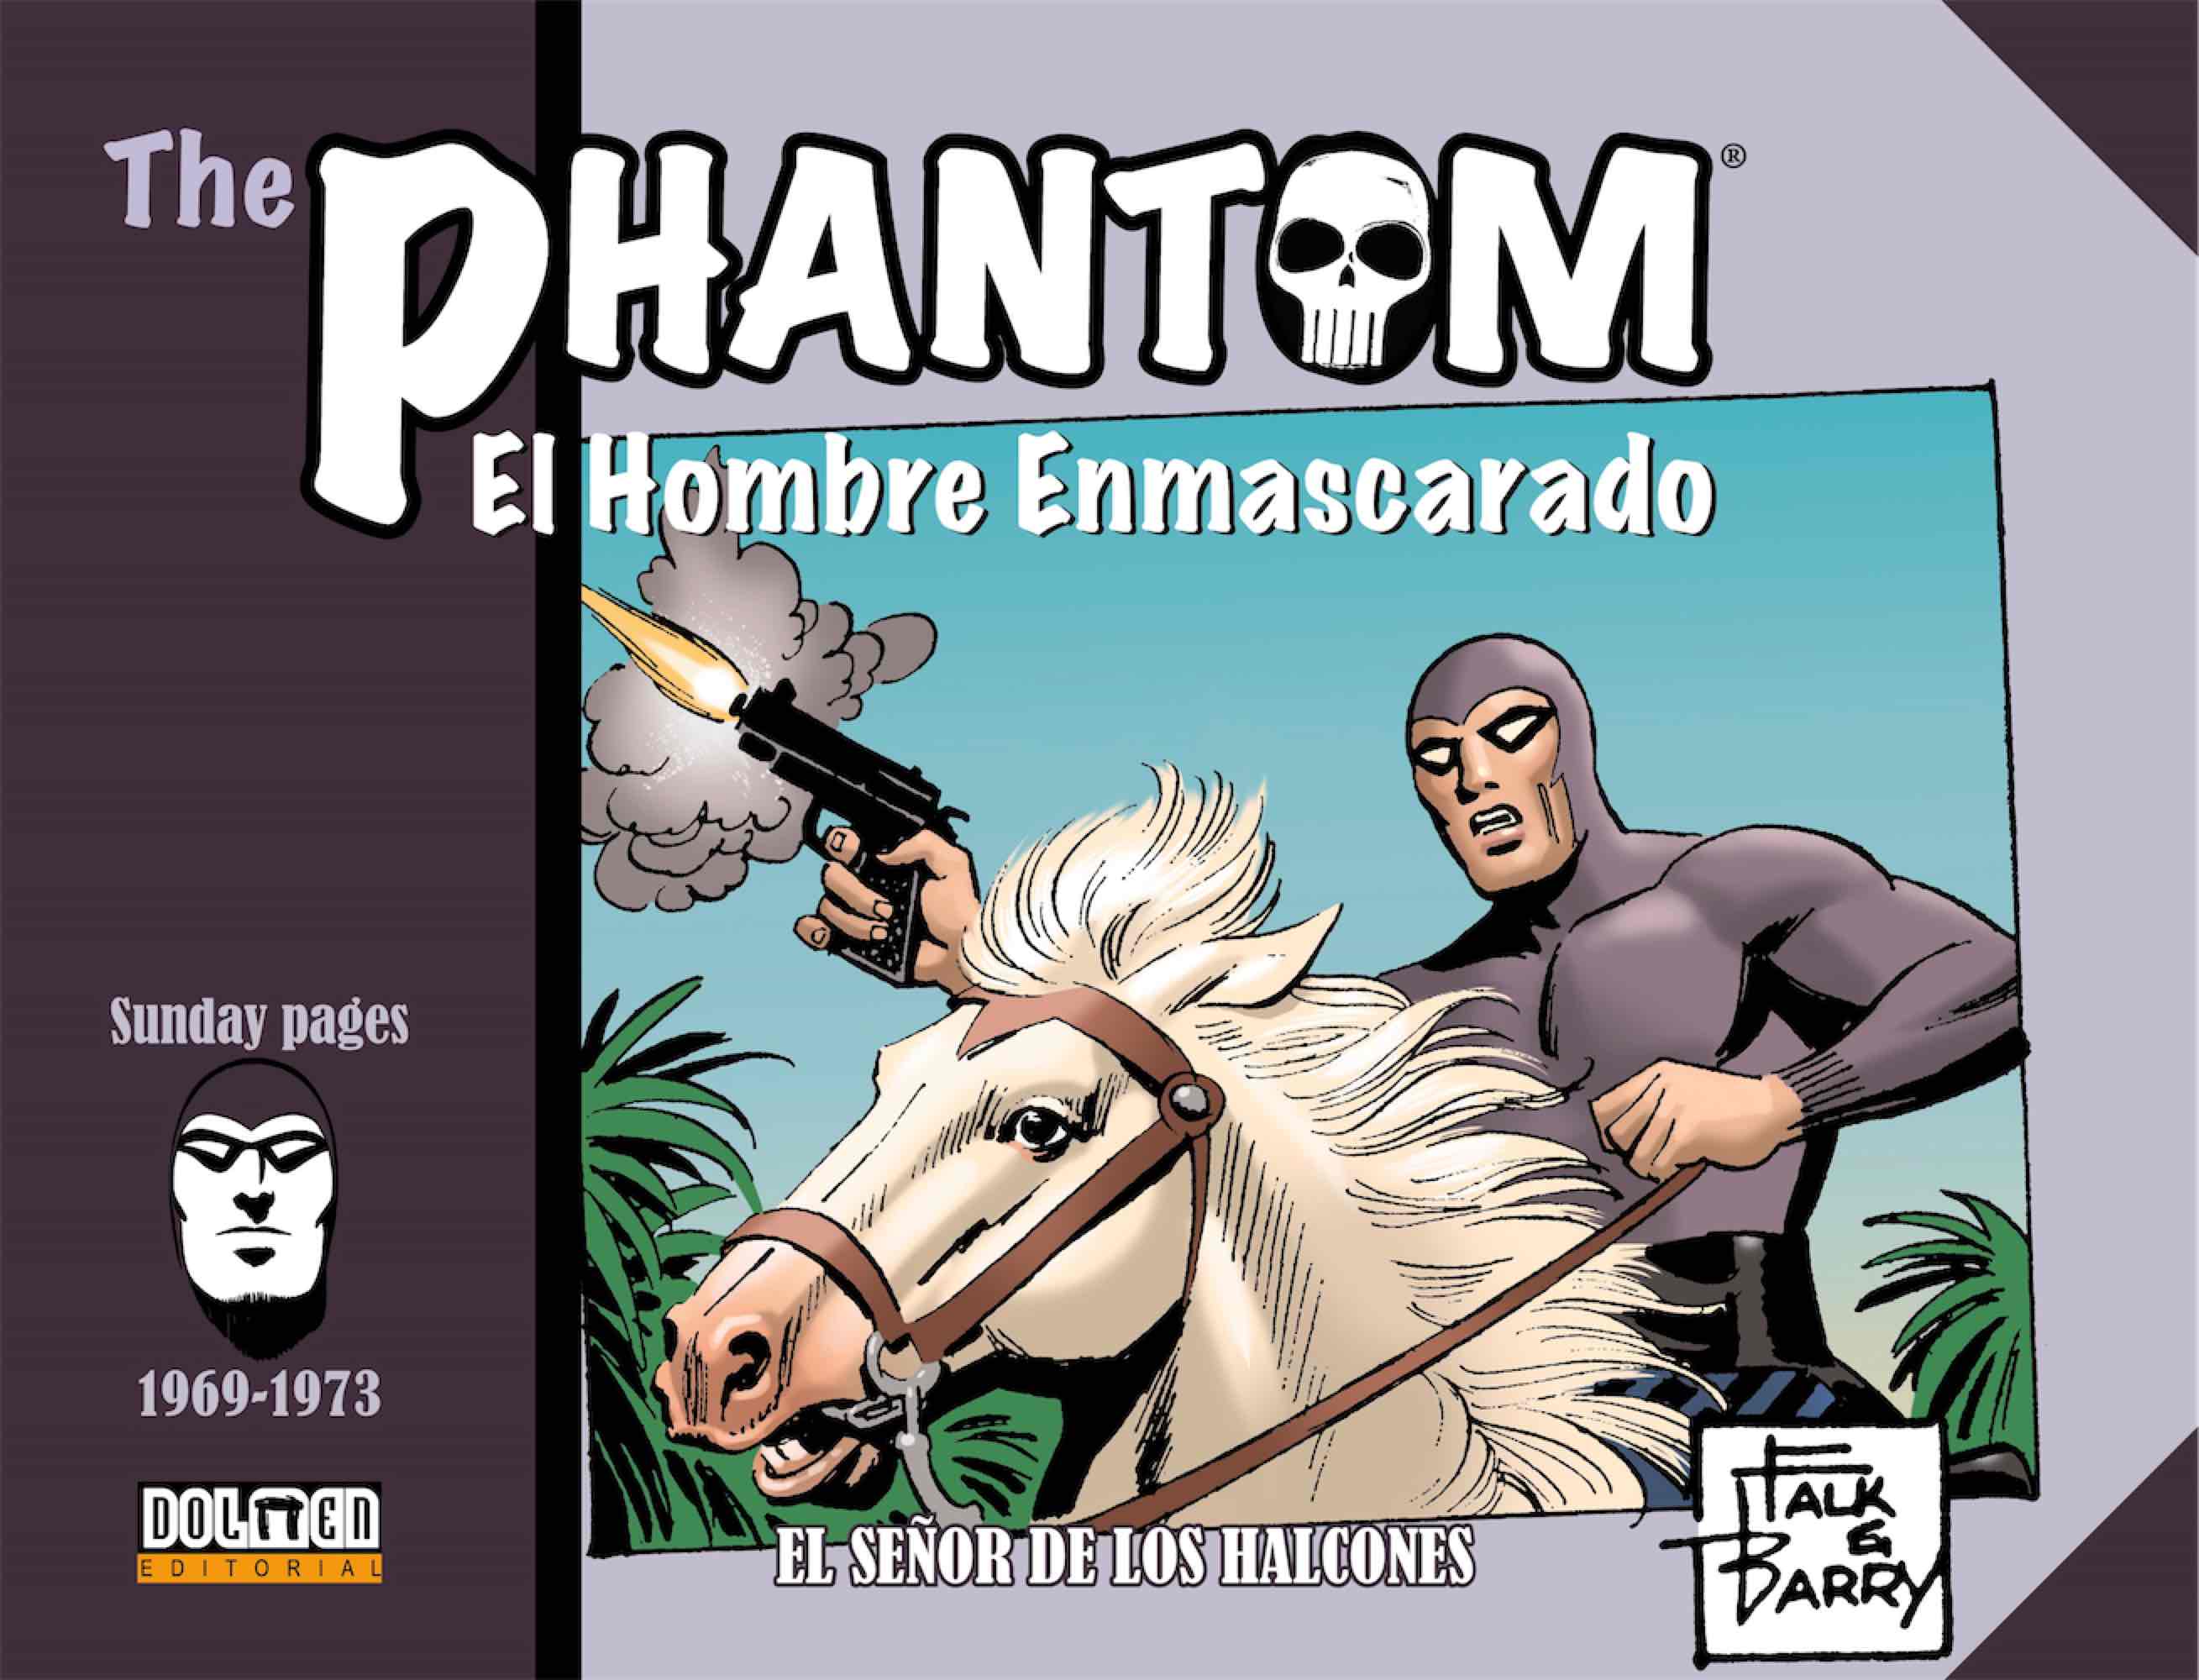 THE PHANTOM. EL HOMBRE ENMASCARADO (1969-1973 SUNDAY PAGES) EL SEÑOR DE LOS HALCONES